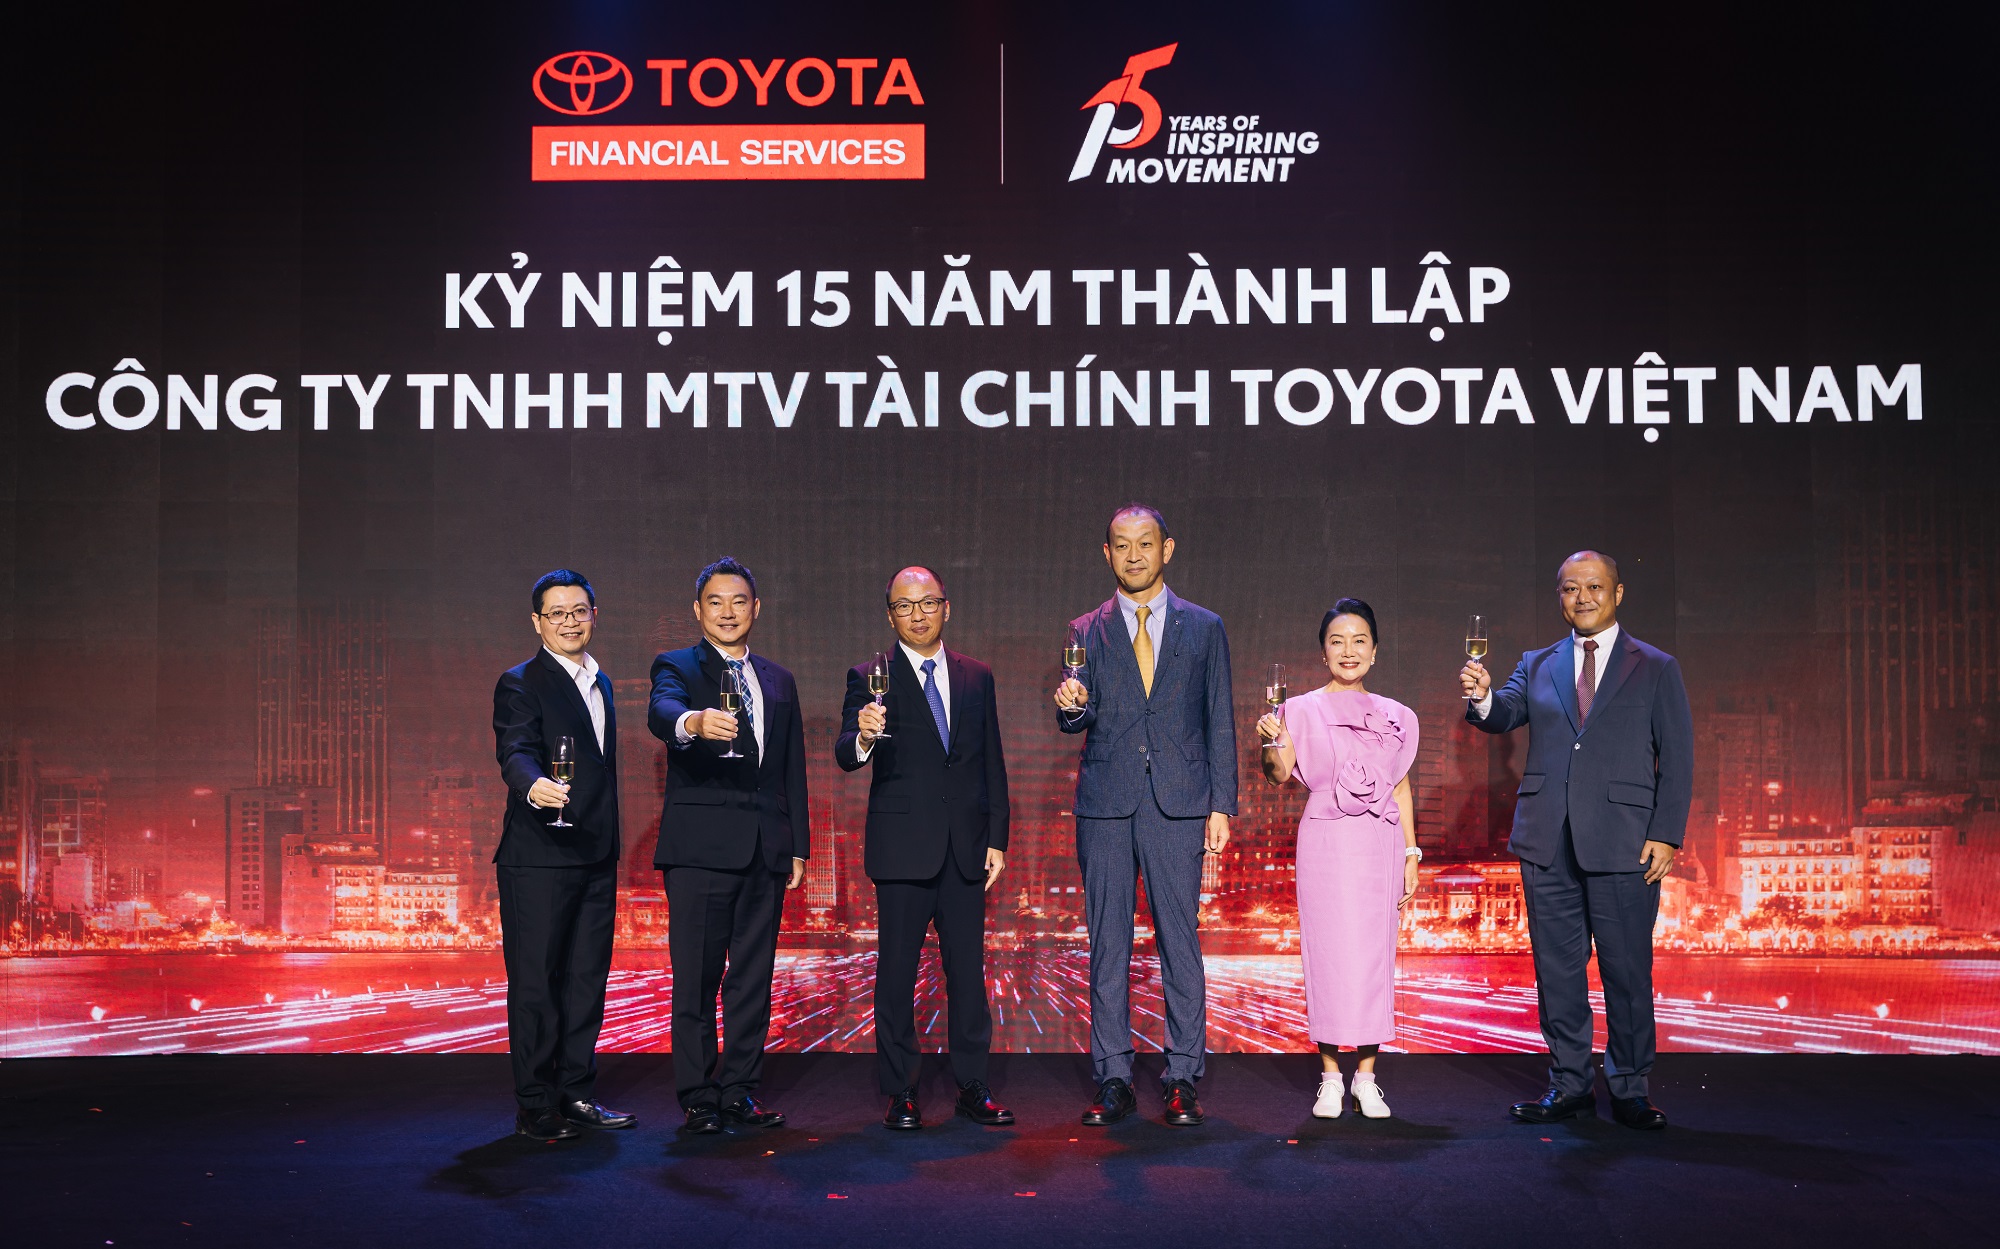 Công ty Tài chính Toyota Việt Nam kỷ niệm 15 năm thành lập